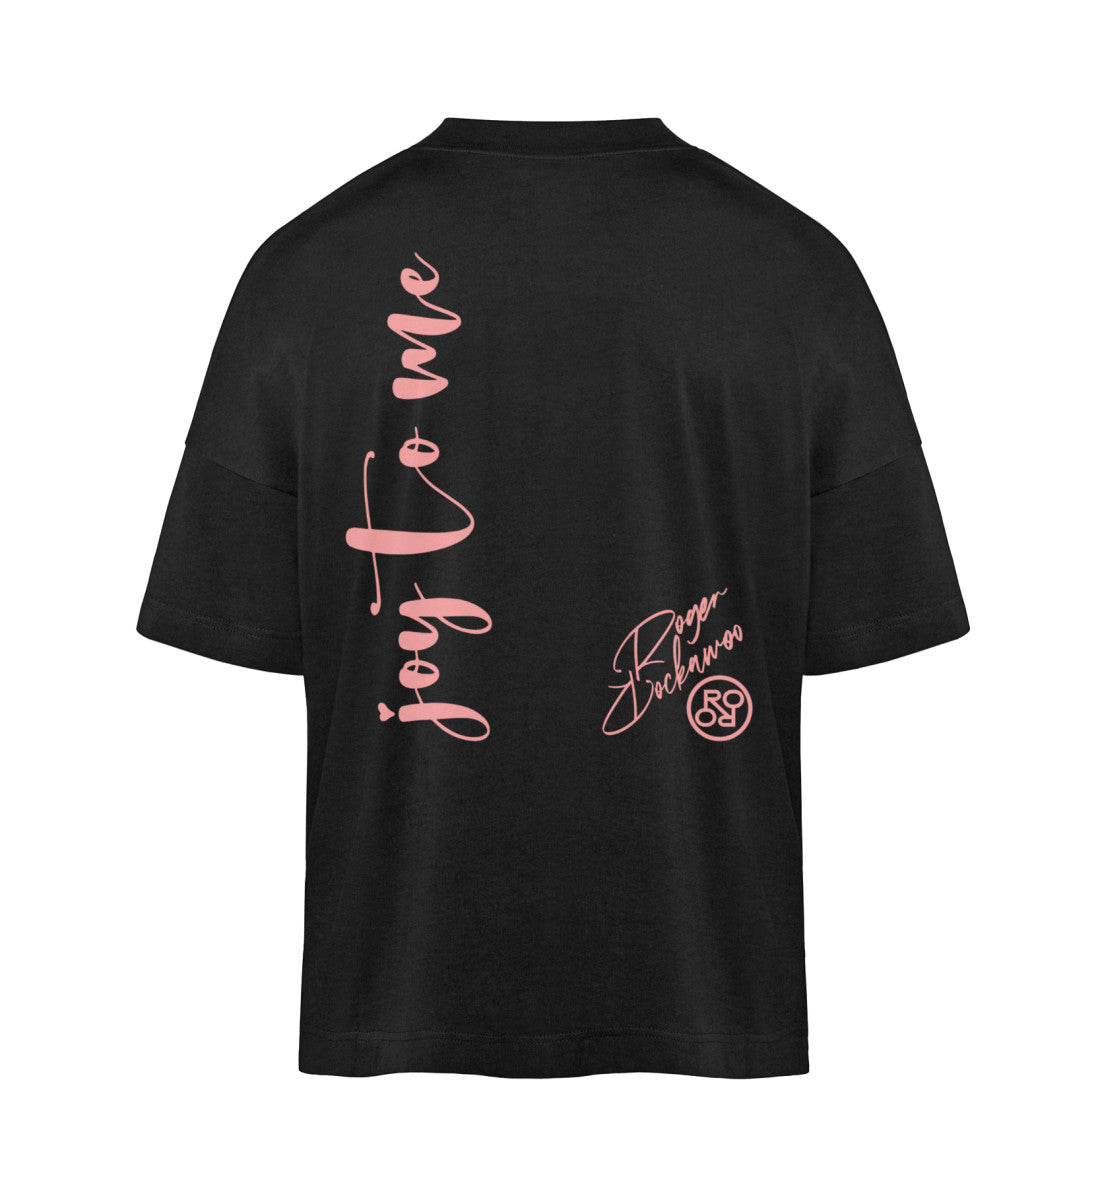 Schwarzes T-Shirt im Unisex Oversize Fit für Frauen und Männer bedruckt mit dem Design der Roger Rockawoo Kollektion Joy to me